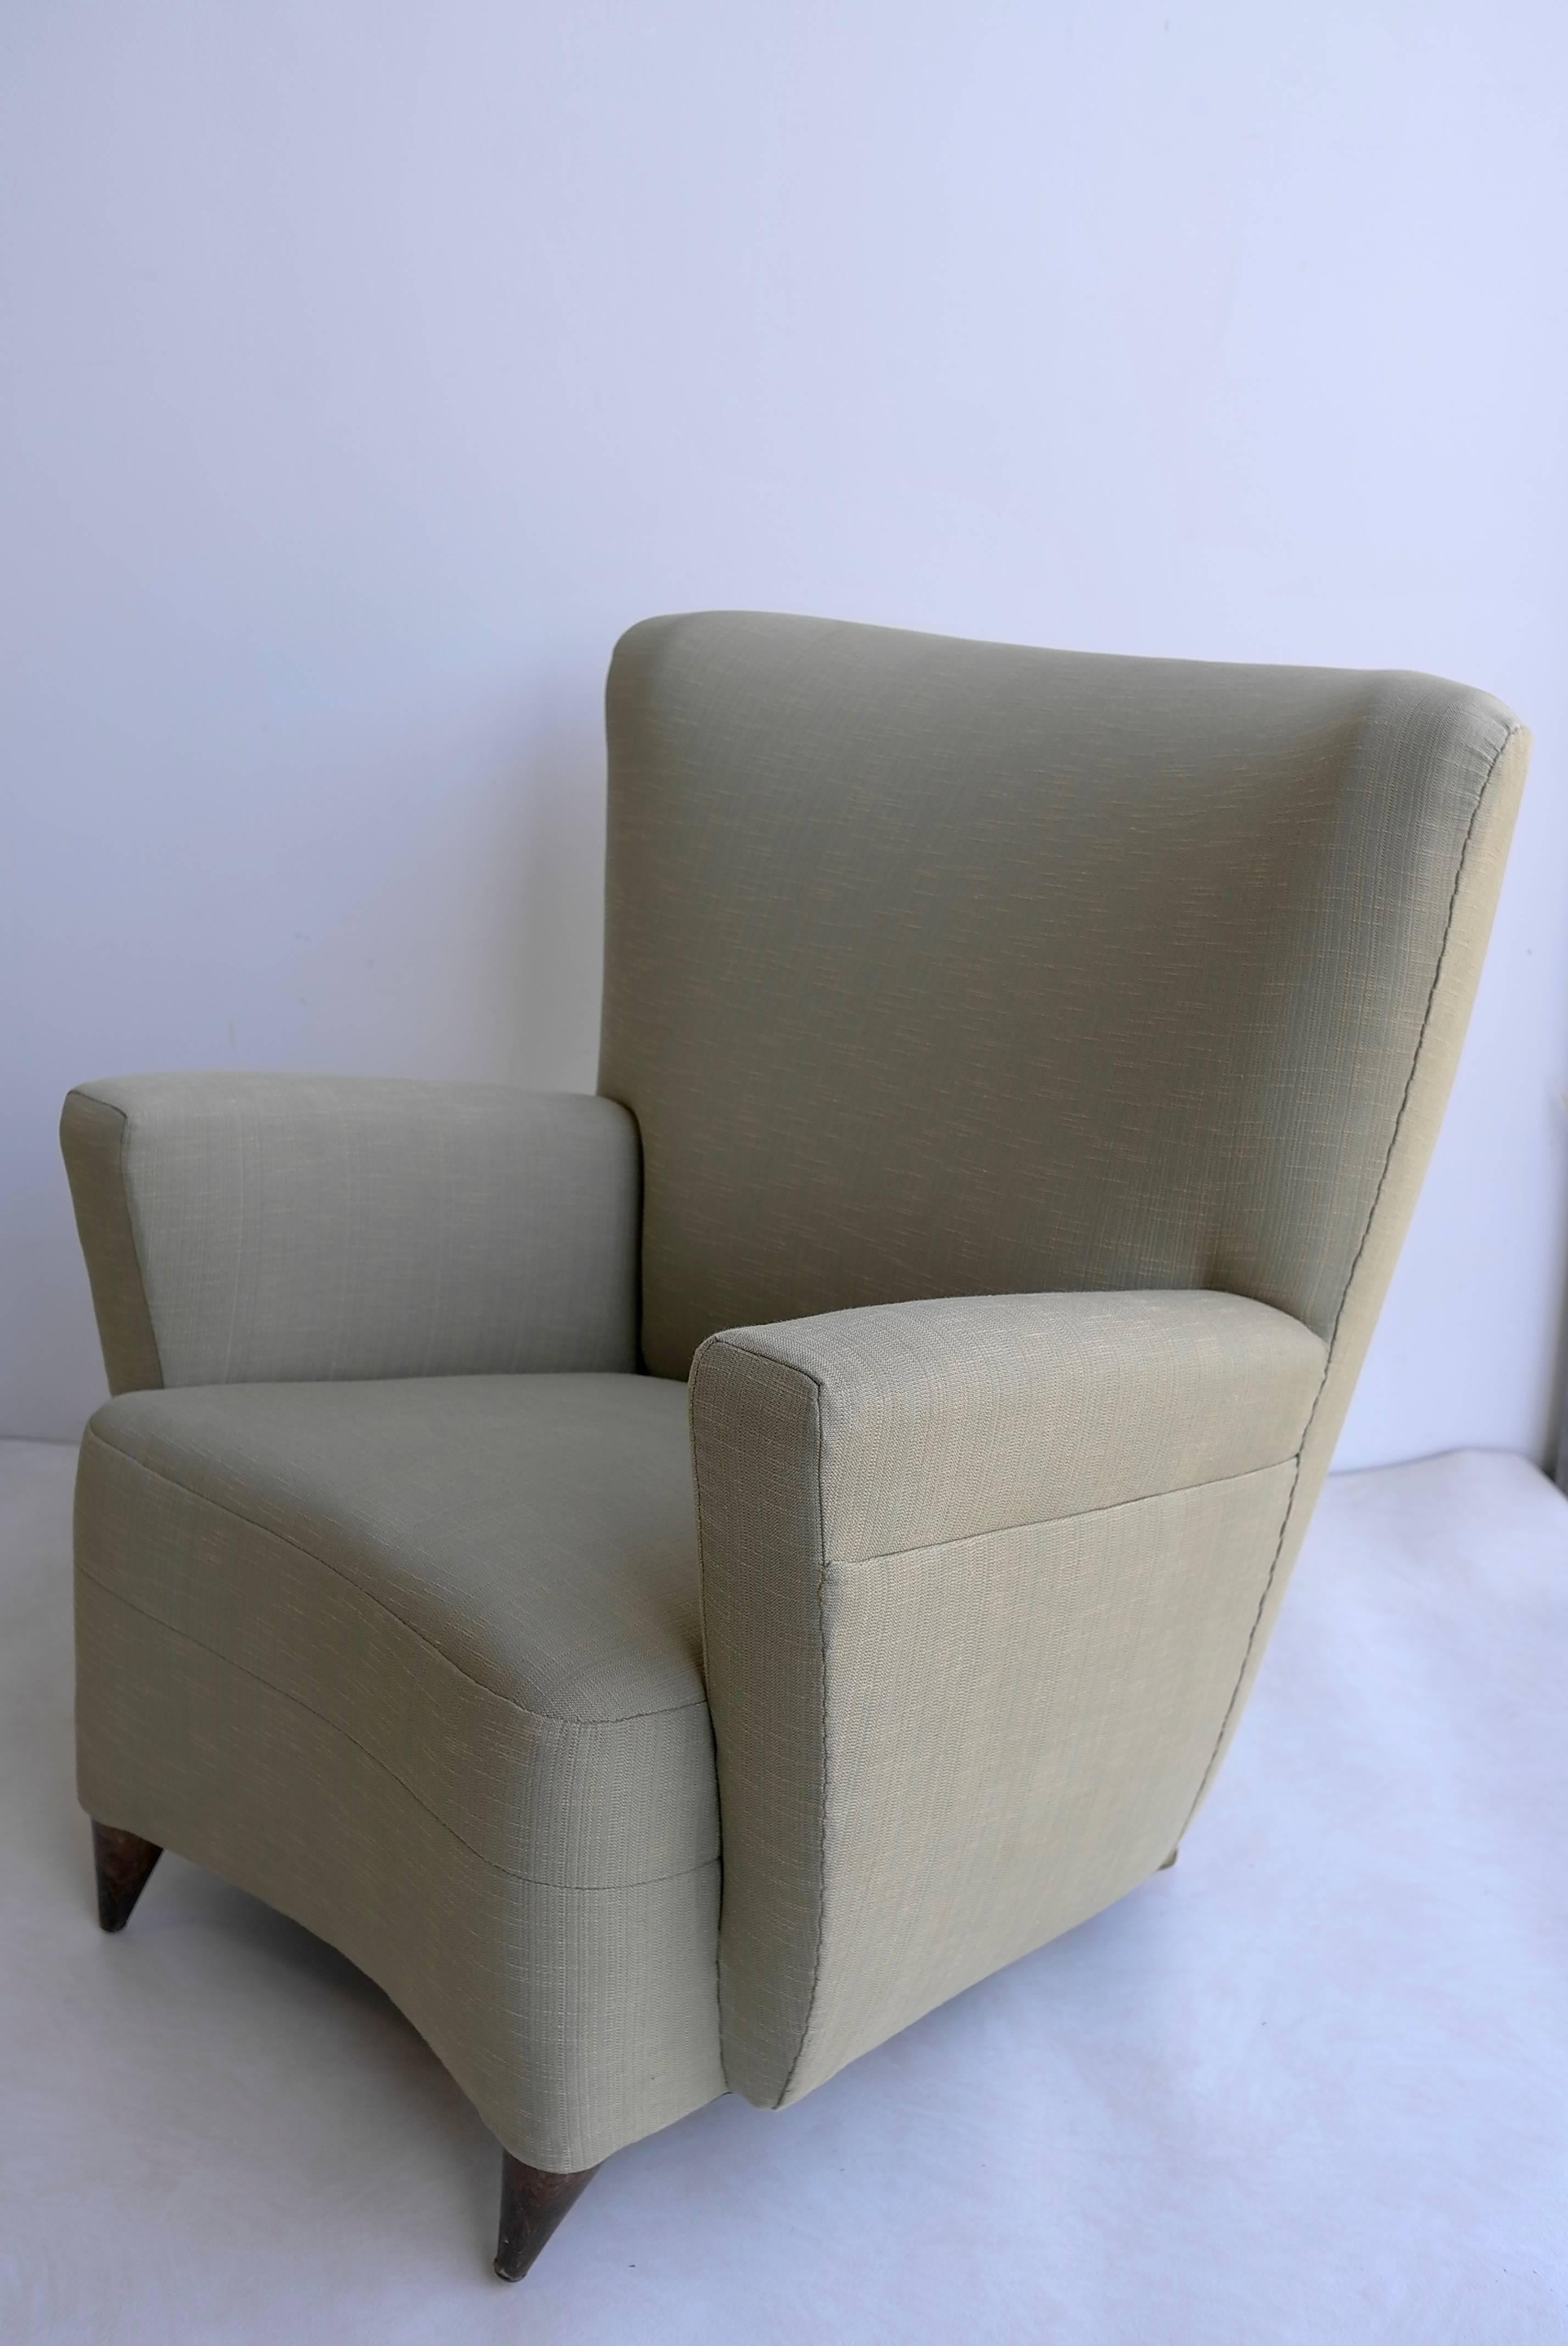 Fabric Green Italian three-seat Sofa set in style of Gio Ponti